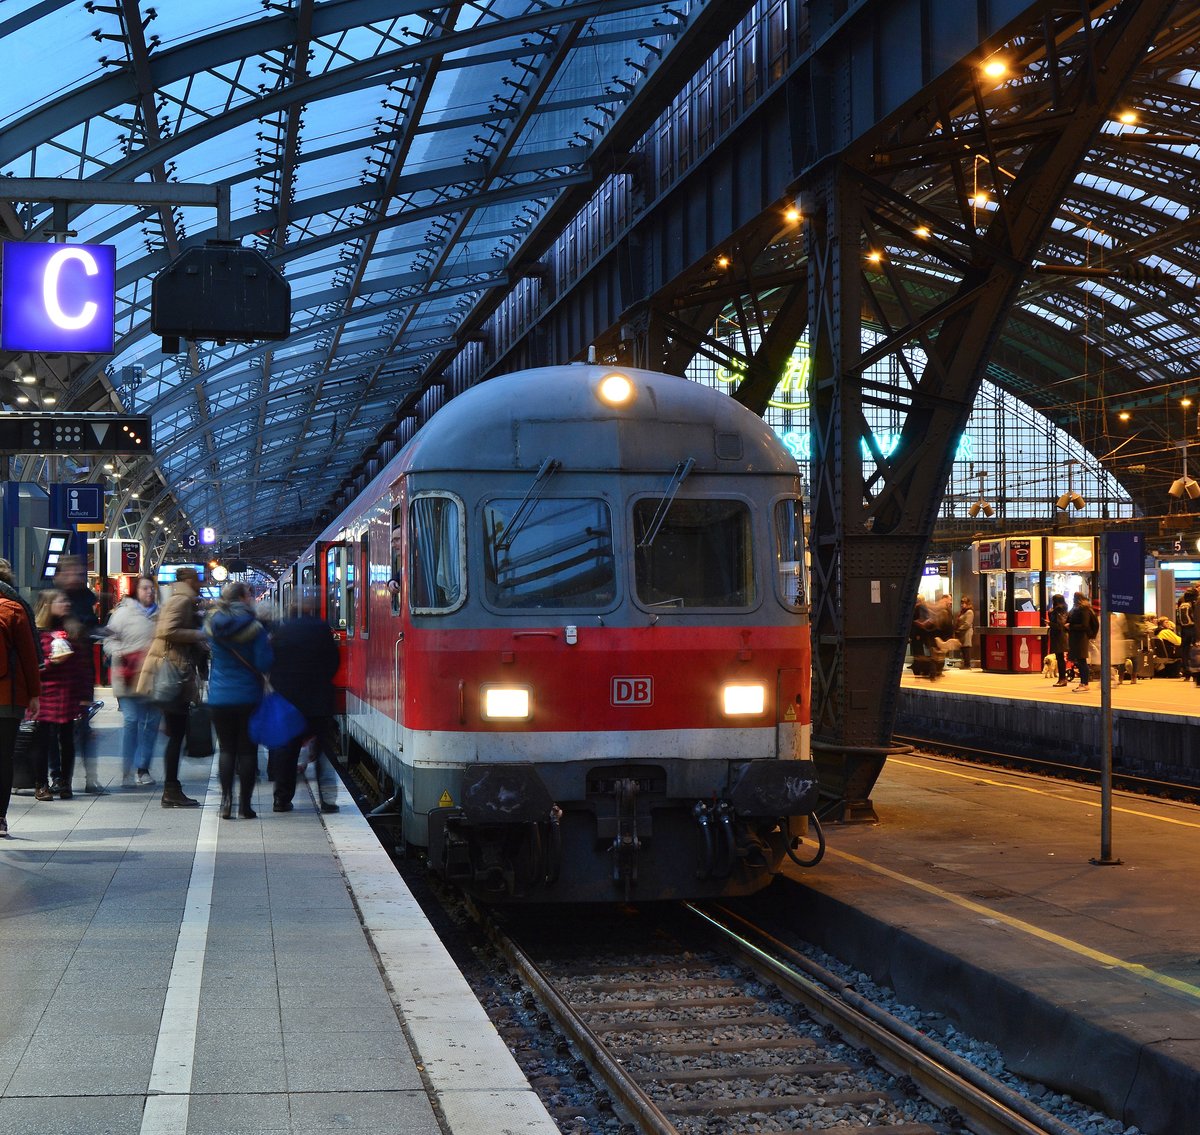 Während alle Leute in die n-Wagen des RE8 Verstärkers nach Kaldenkirchen einsteigen nimmt sich der Fotograf noch einmal die Zeit ein letztes mal den RE8 Verstärker aufzunehmen. Denn am 9.12.16 lief die Zeit der n-Wagen auf dem RE8 ab. Nach mehr als 50Jahren Betrieb verschwinden sie nun aus NRW.

Köln Hbf 09.12.2016